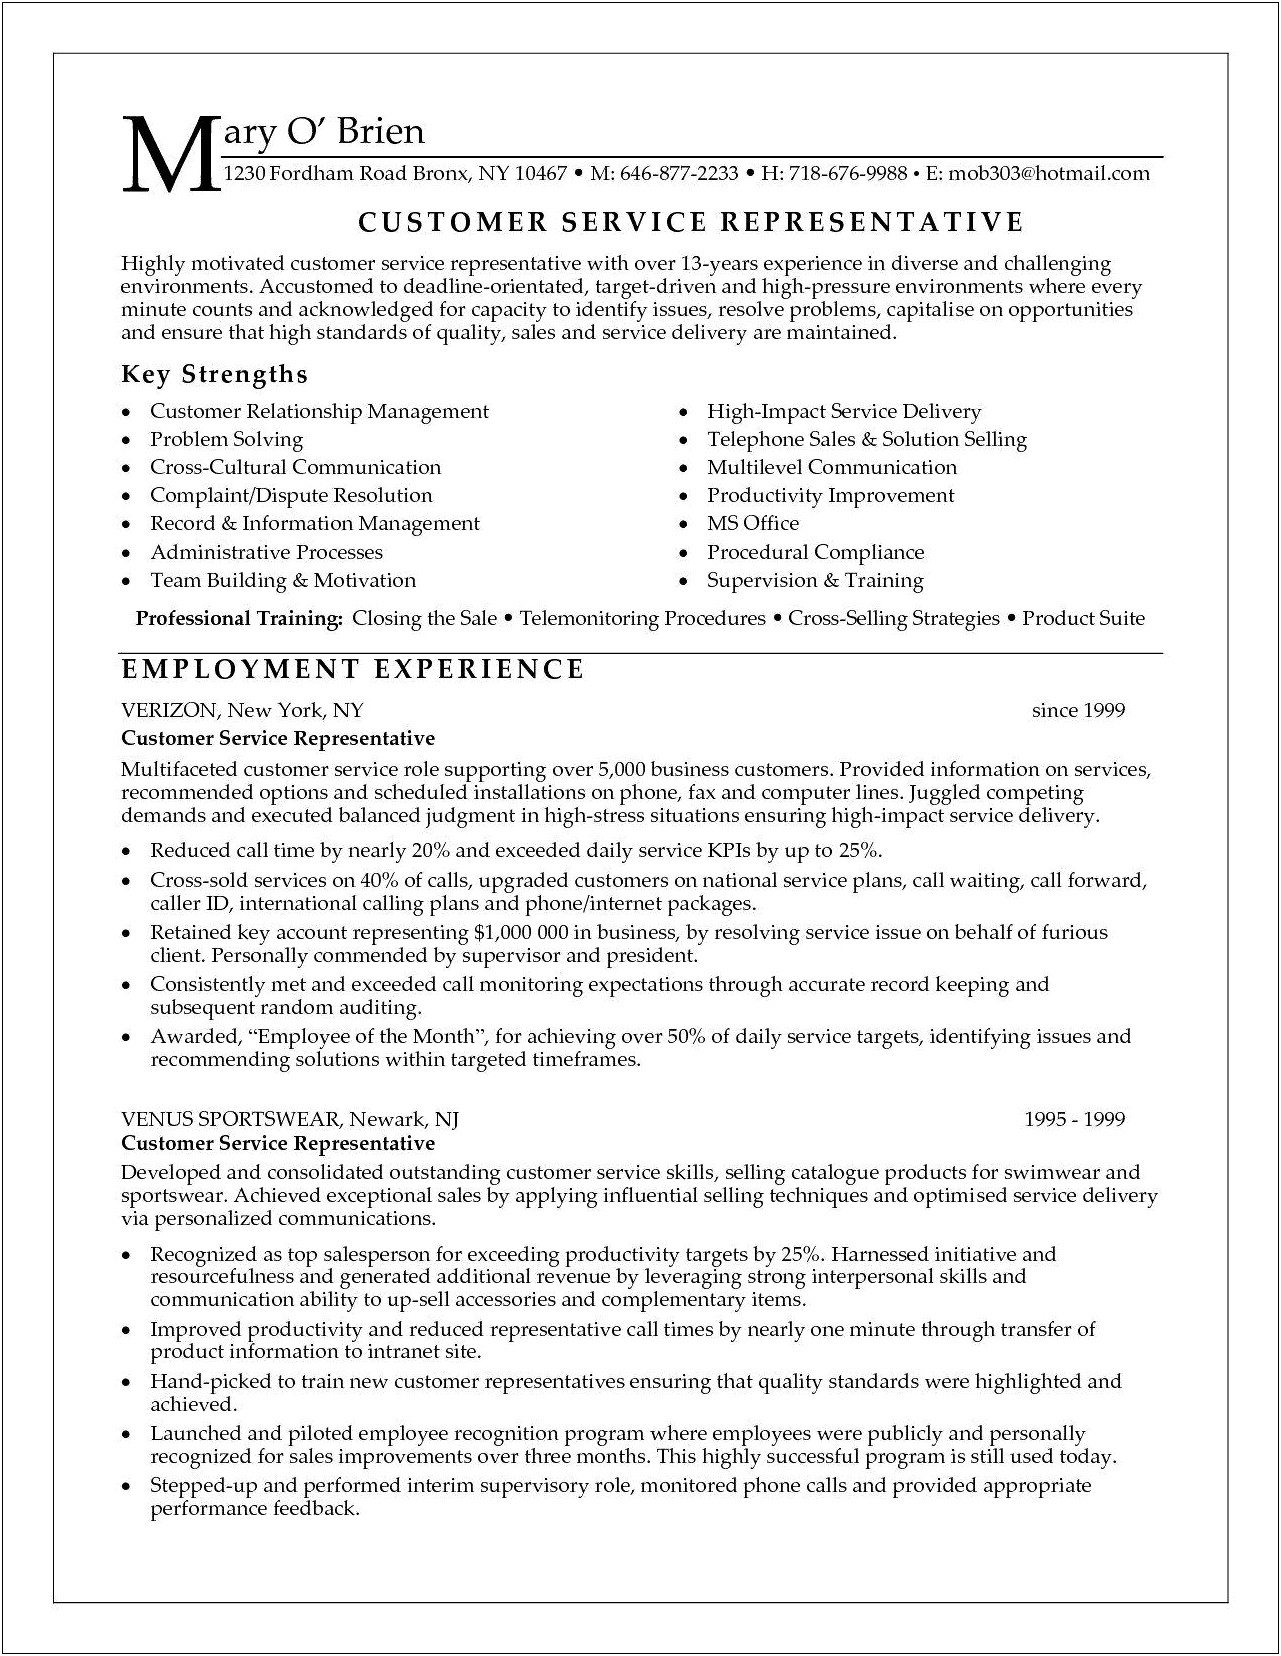 Description Of Guest Service Representative For Resume